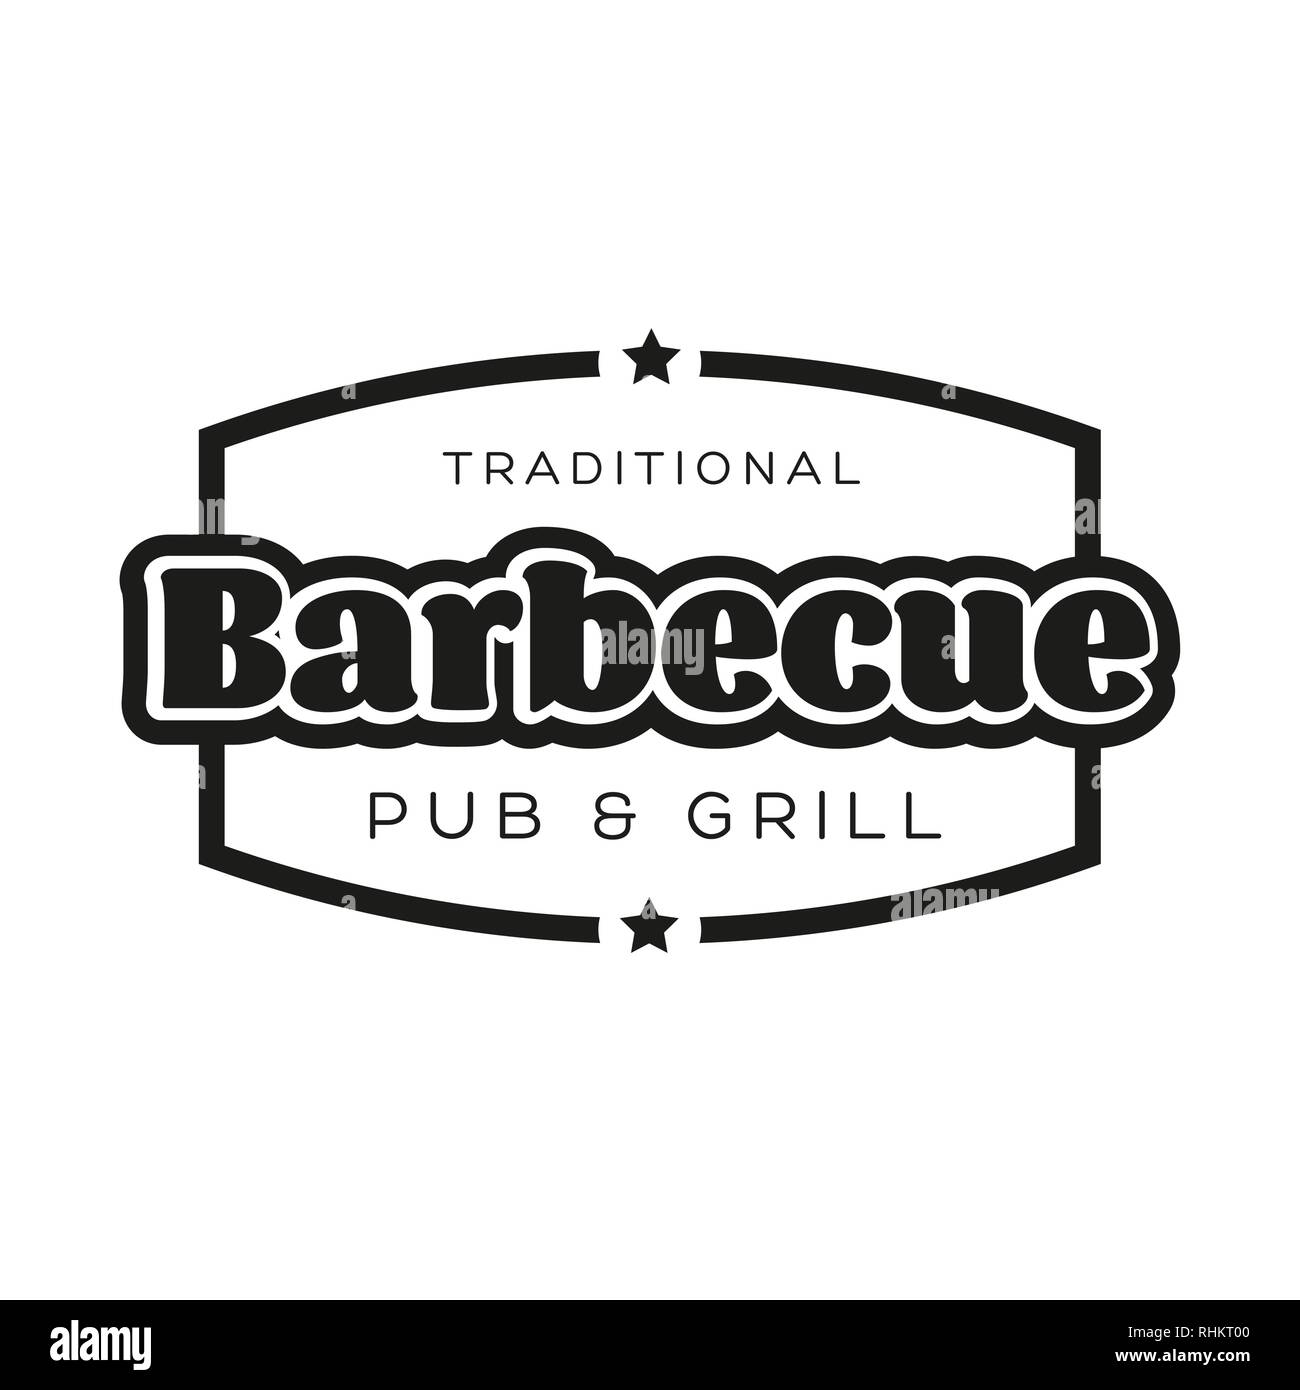 Barbecue et grill traditionnel pub sign Illustration de Vecteur